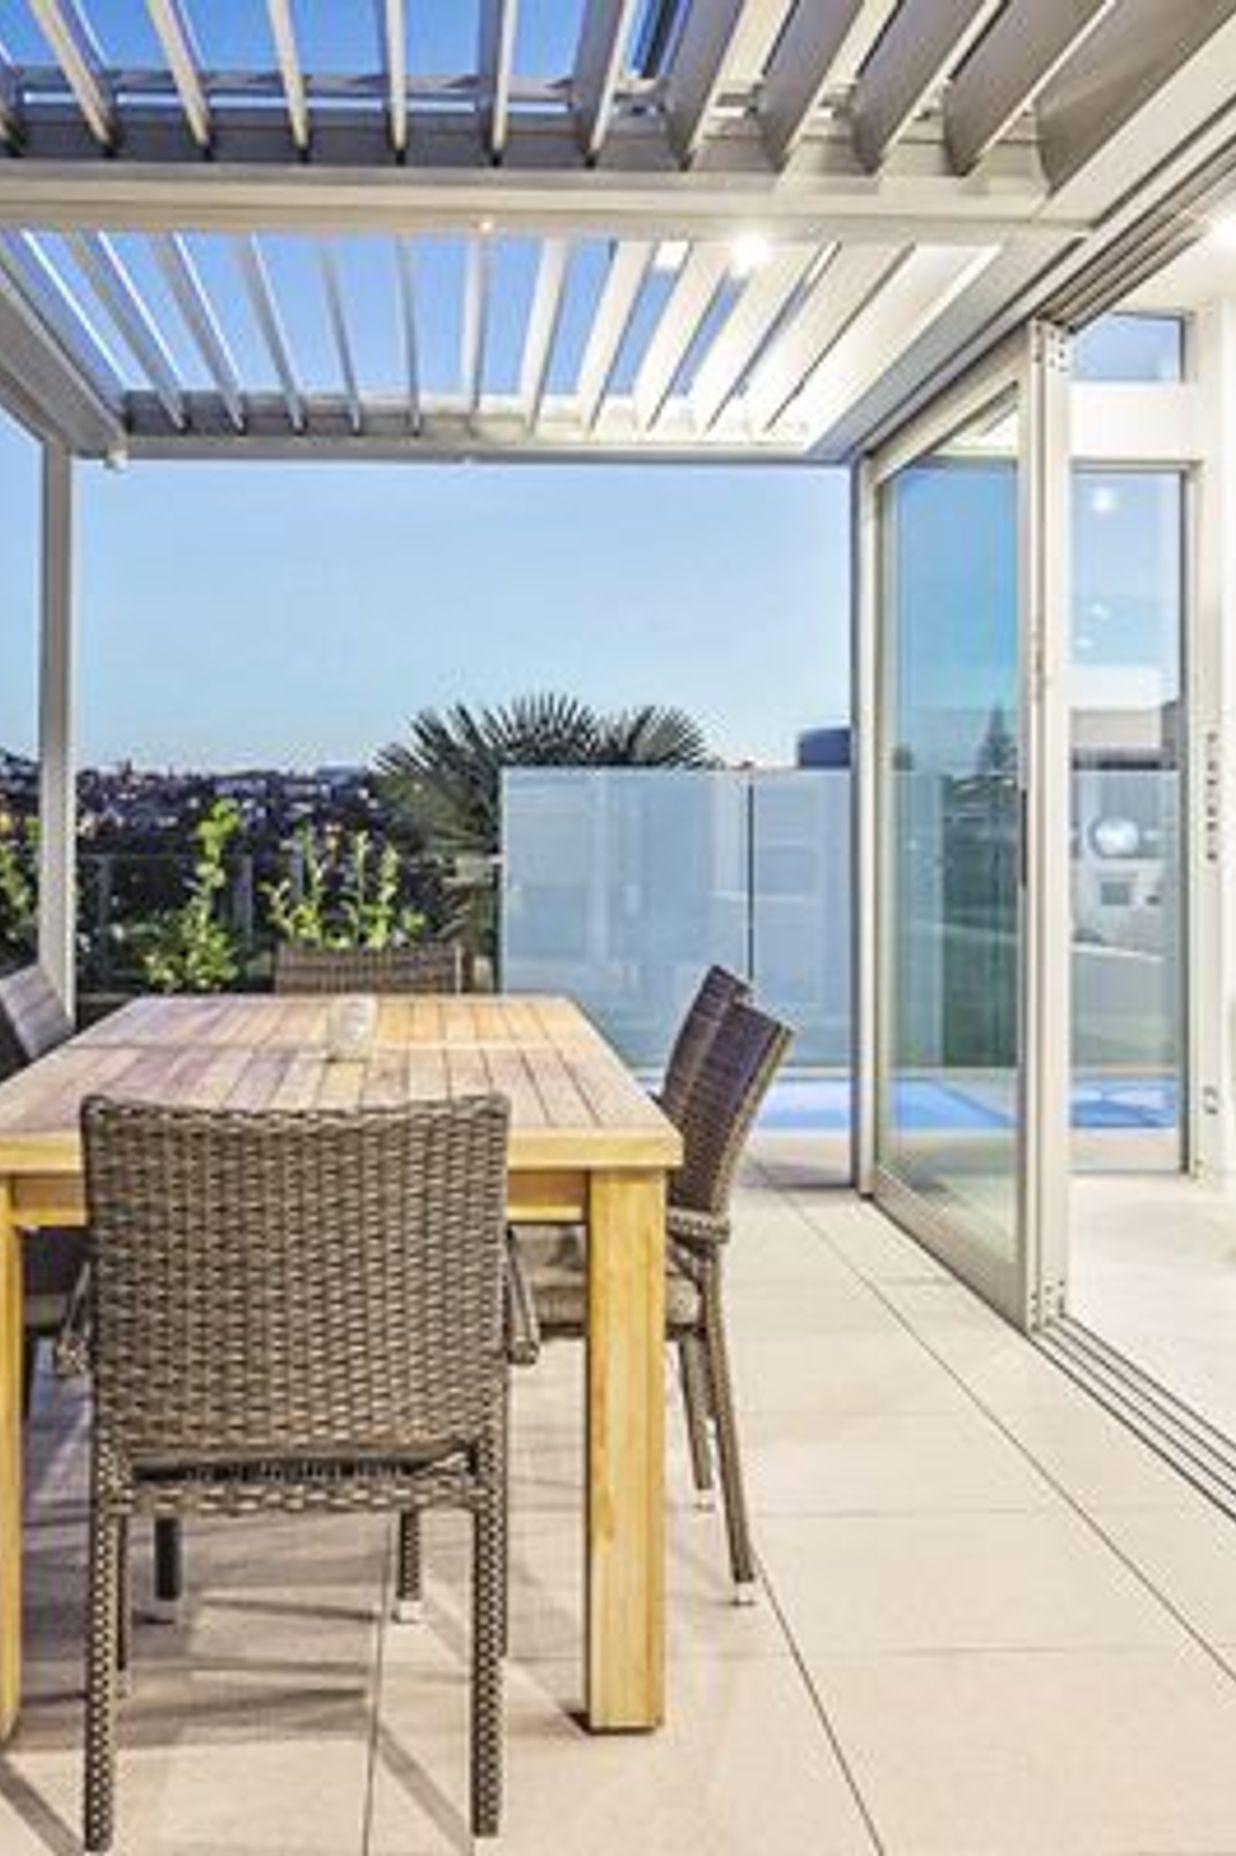 Day Residence Balcony - Contemporary Coastal Home